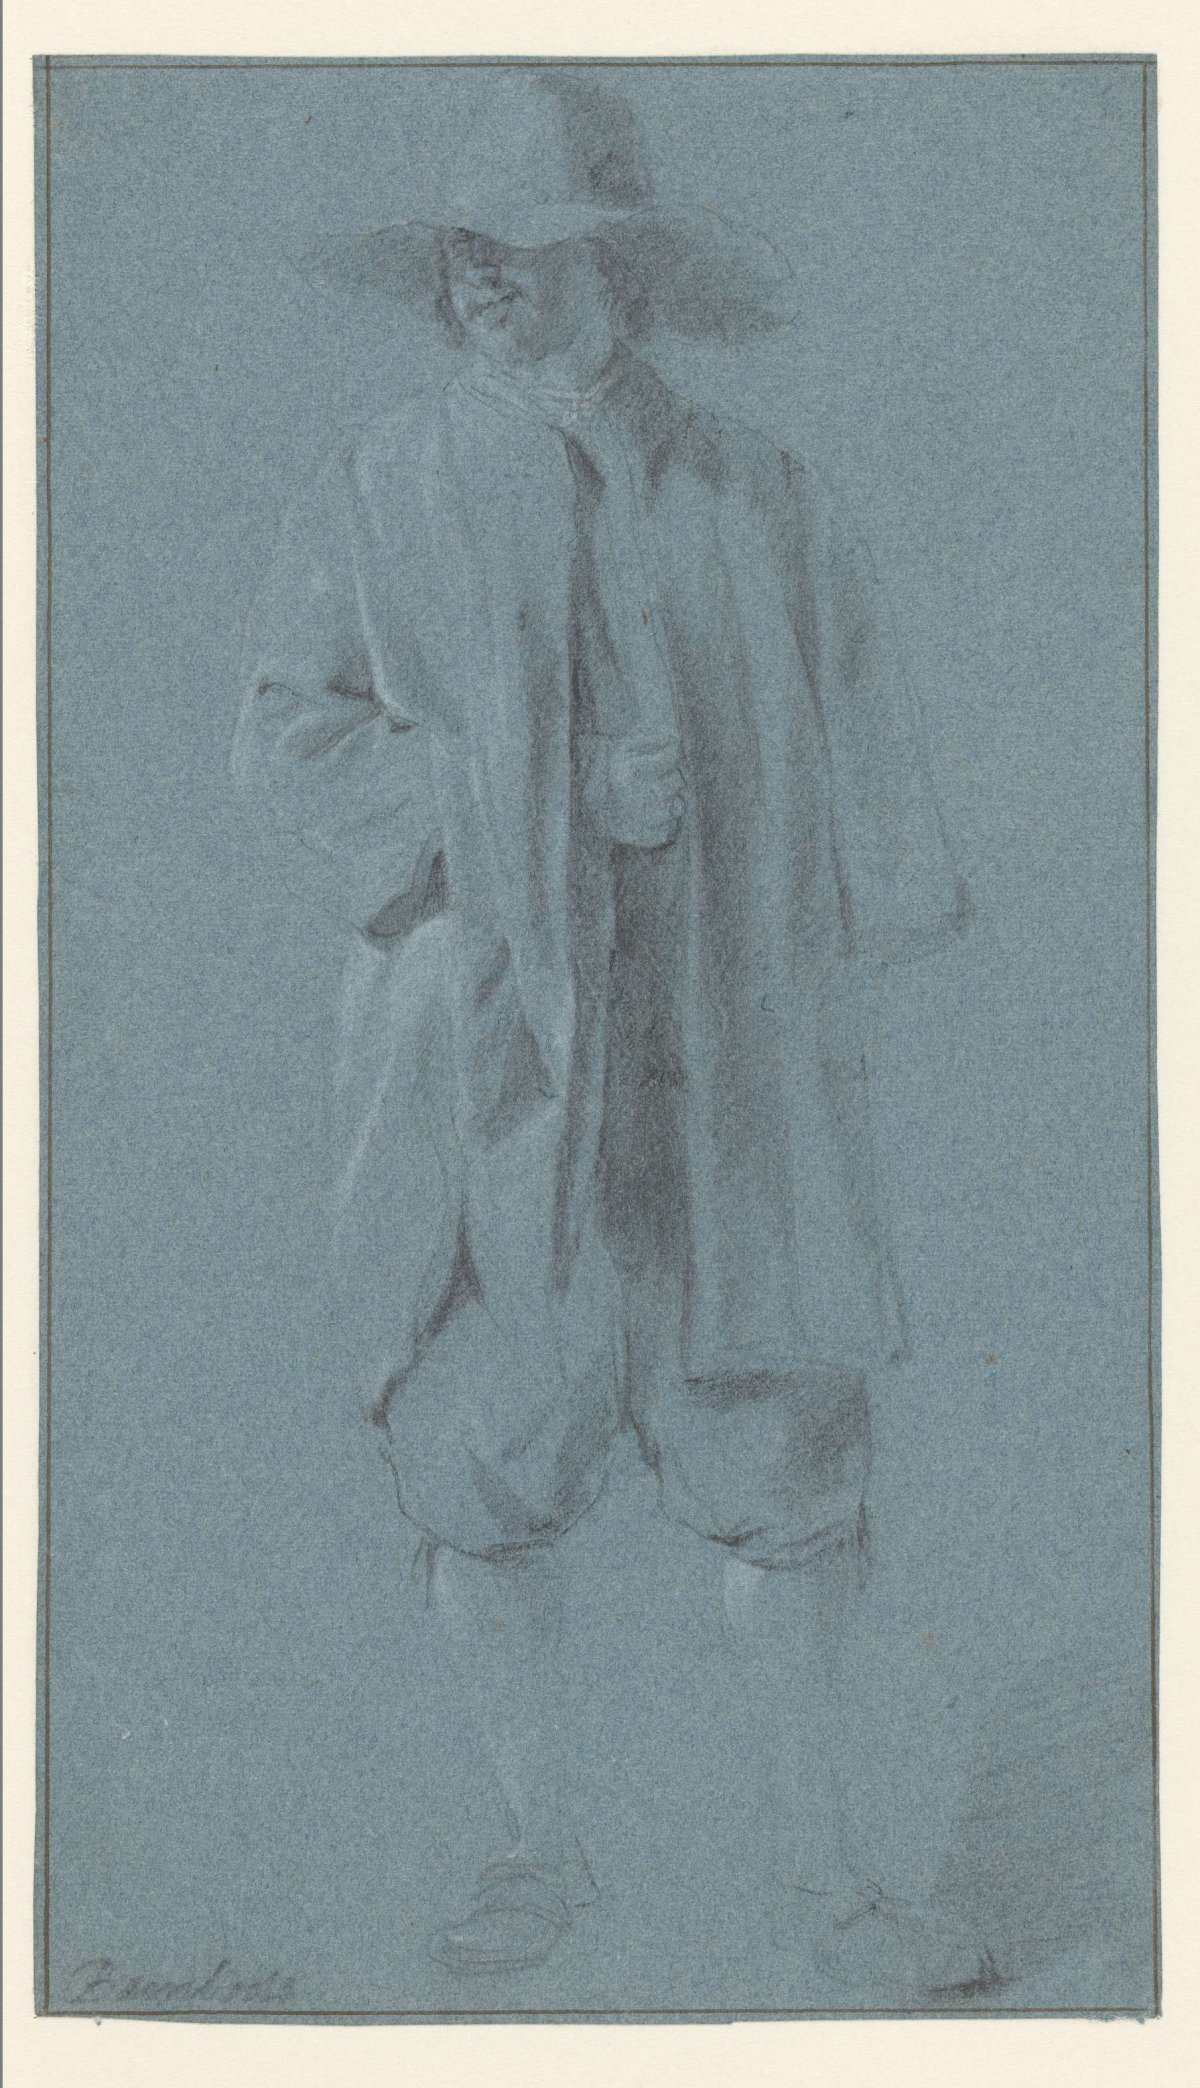 Standing Man with Hat, Pieter Bodding van Laer, 1600 - 1642